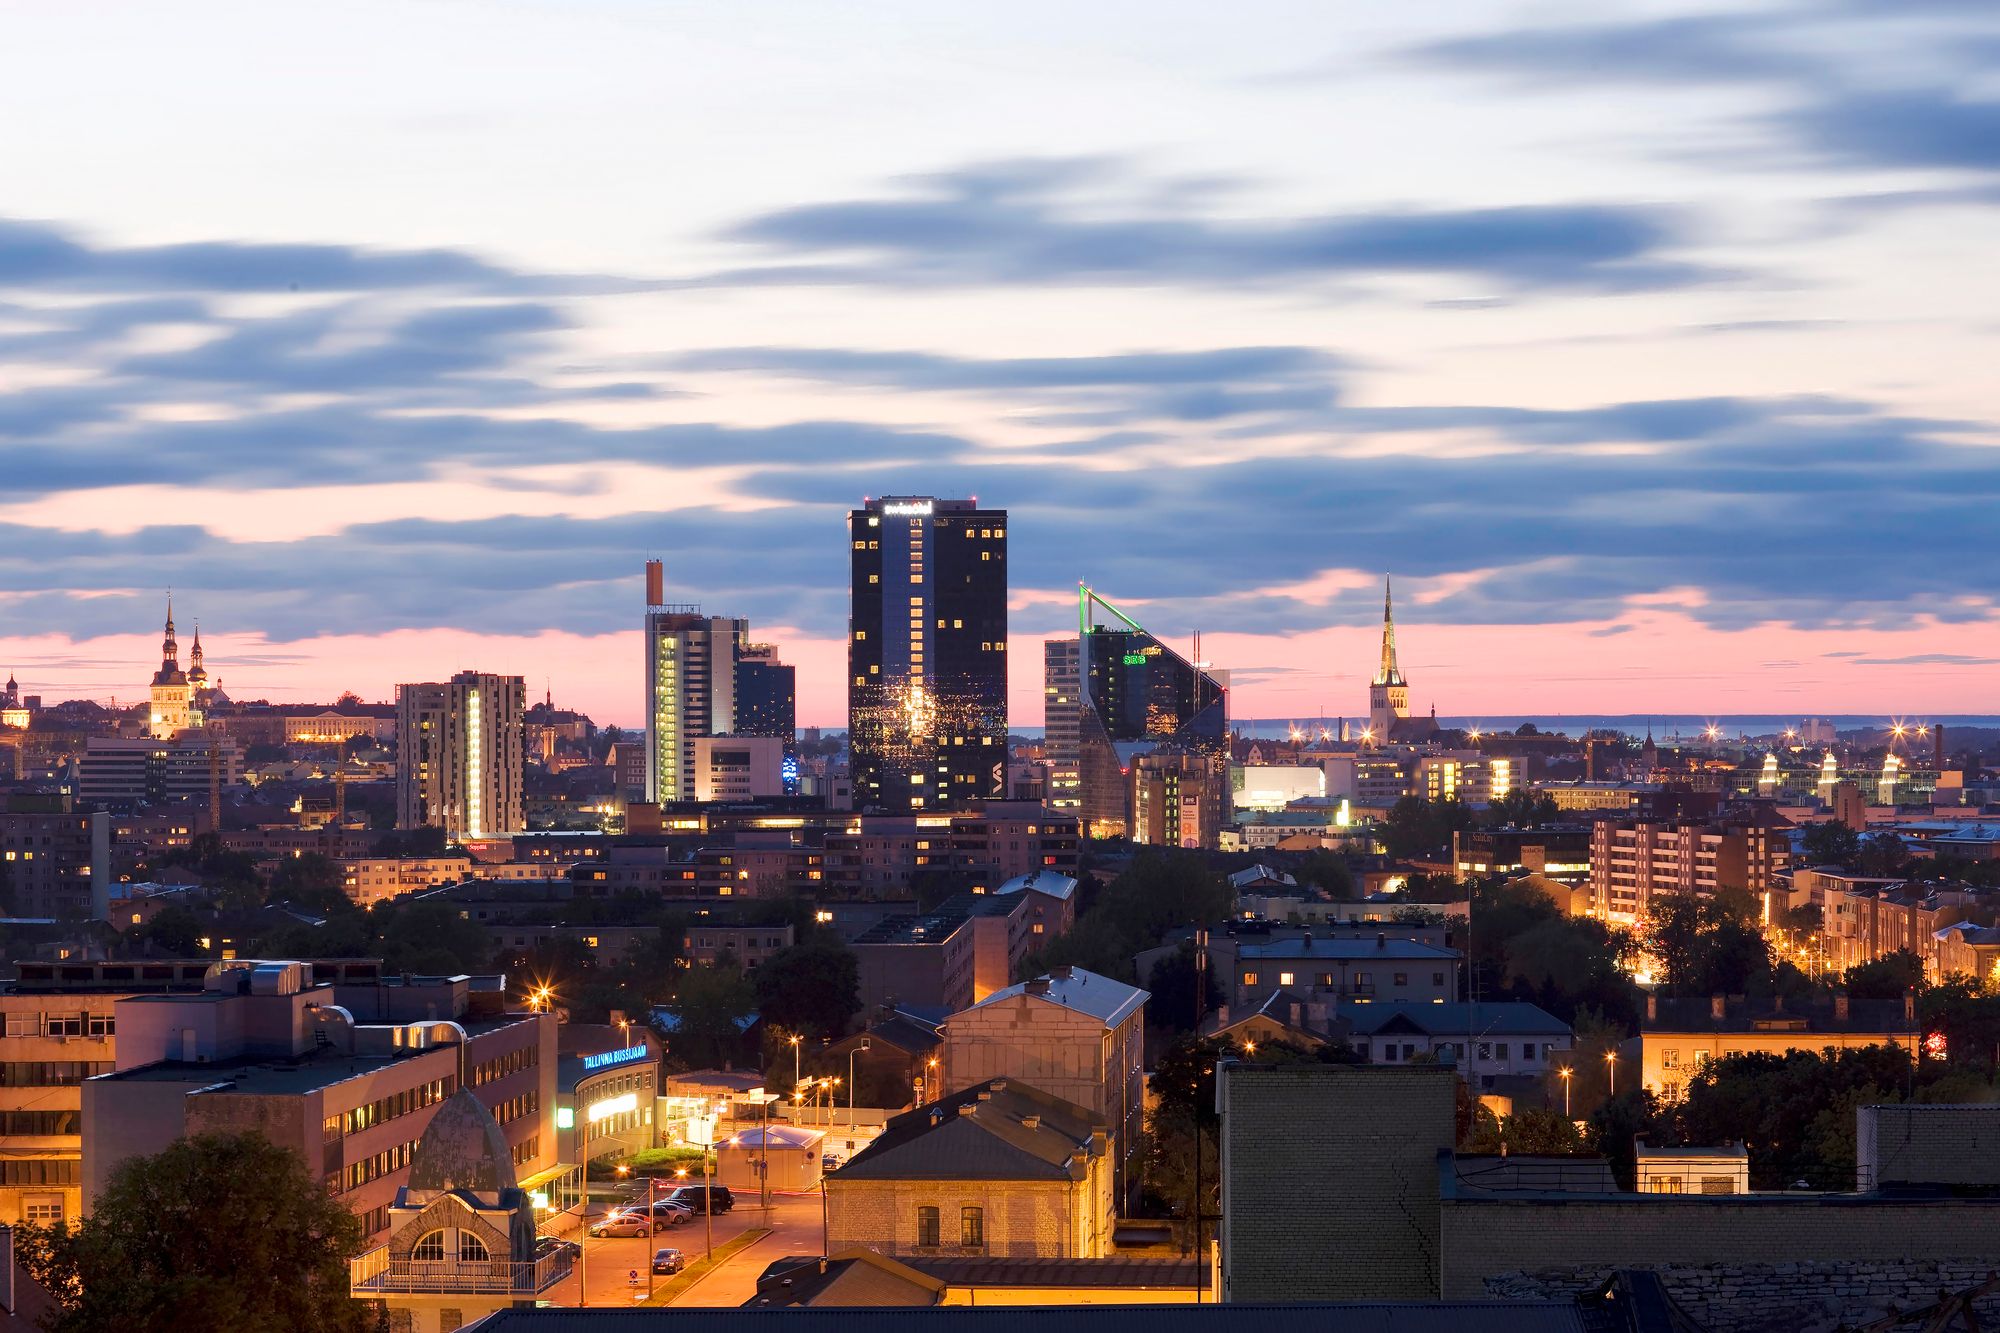 Tallinnan kaupunkikuva muuttuu jatkuvasti, mutta ei niin hurjaan tahtiin kuin uuden itsenäisyyden alkuvuosina 1990-luvulla. Nyt ymmärretään paremmin myös entisöinnin ja restauroinnin arvo. <span class="typography__copyright">© Visit Estonia </span>